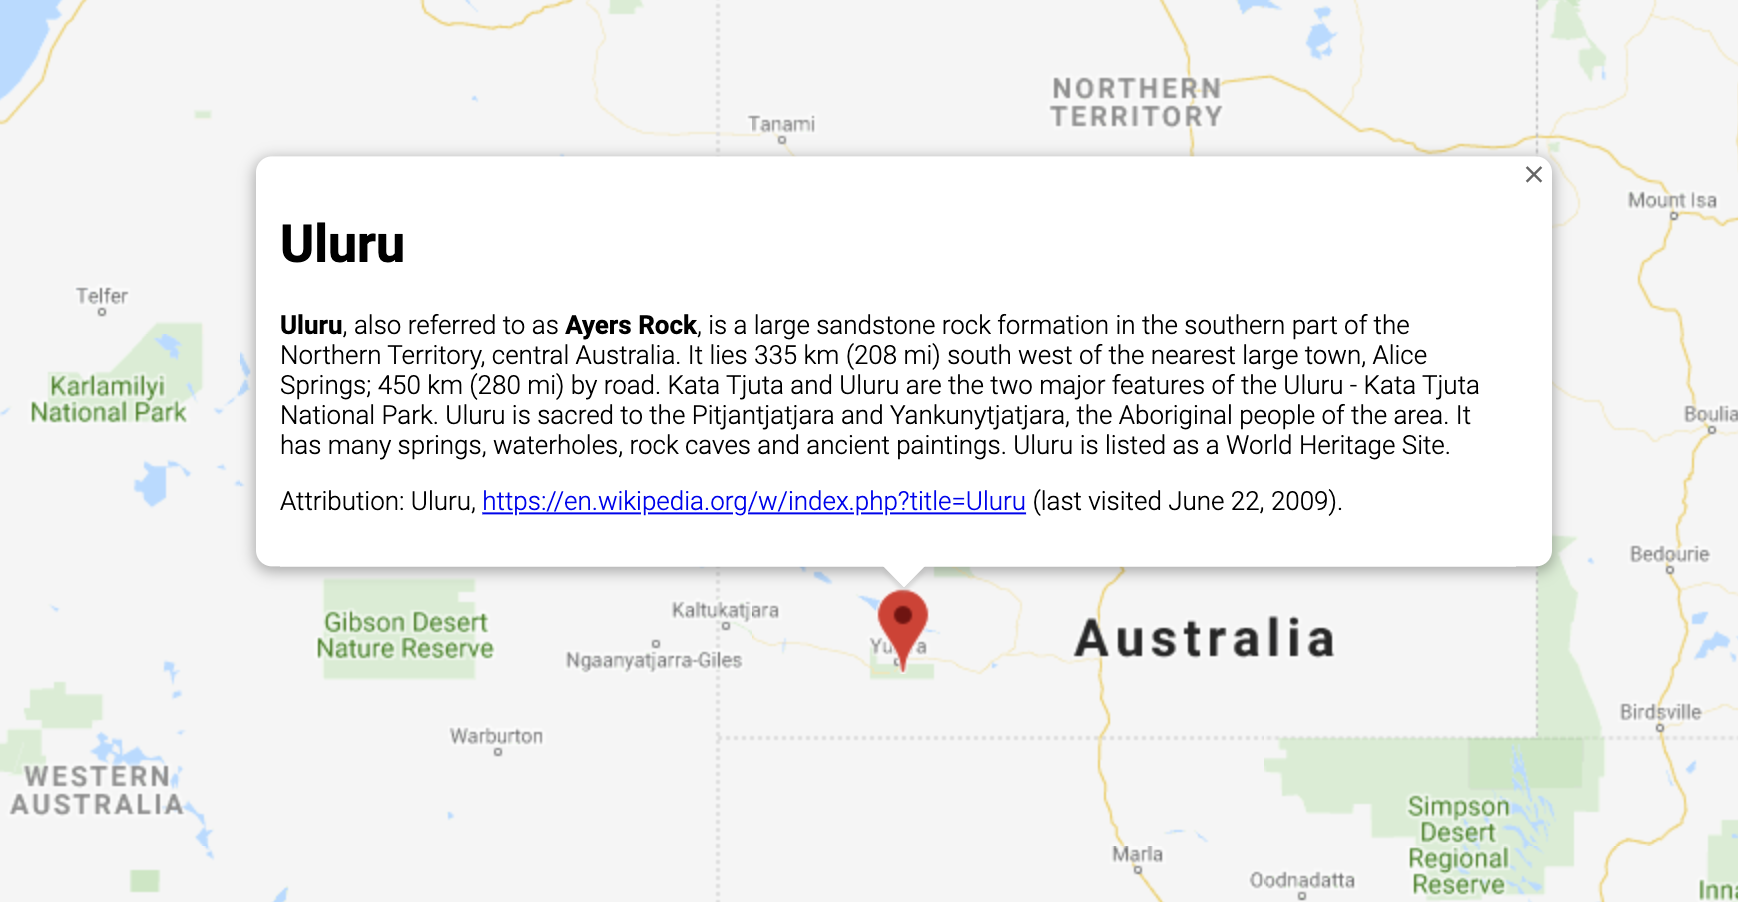 Finestra informativa che mostra informazioni su una località in Australia.